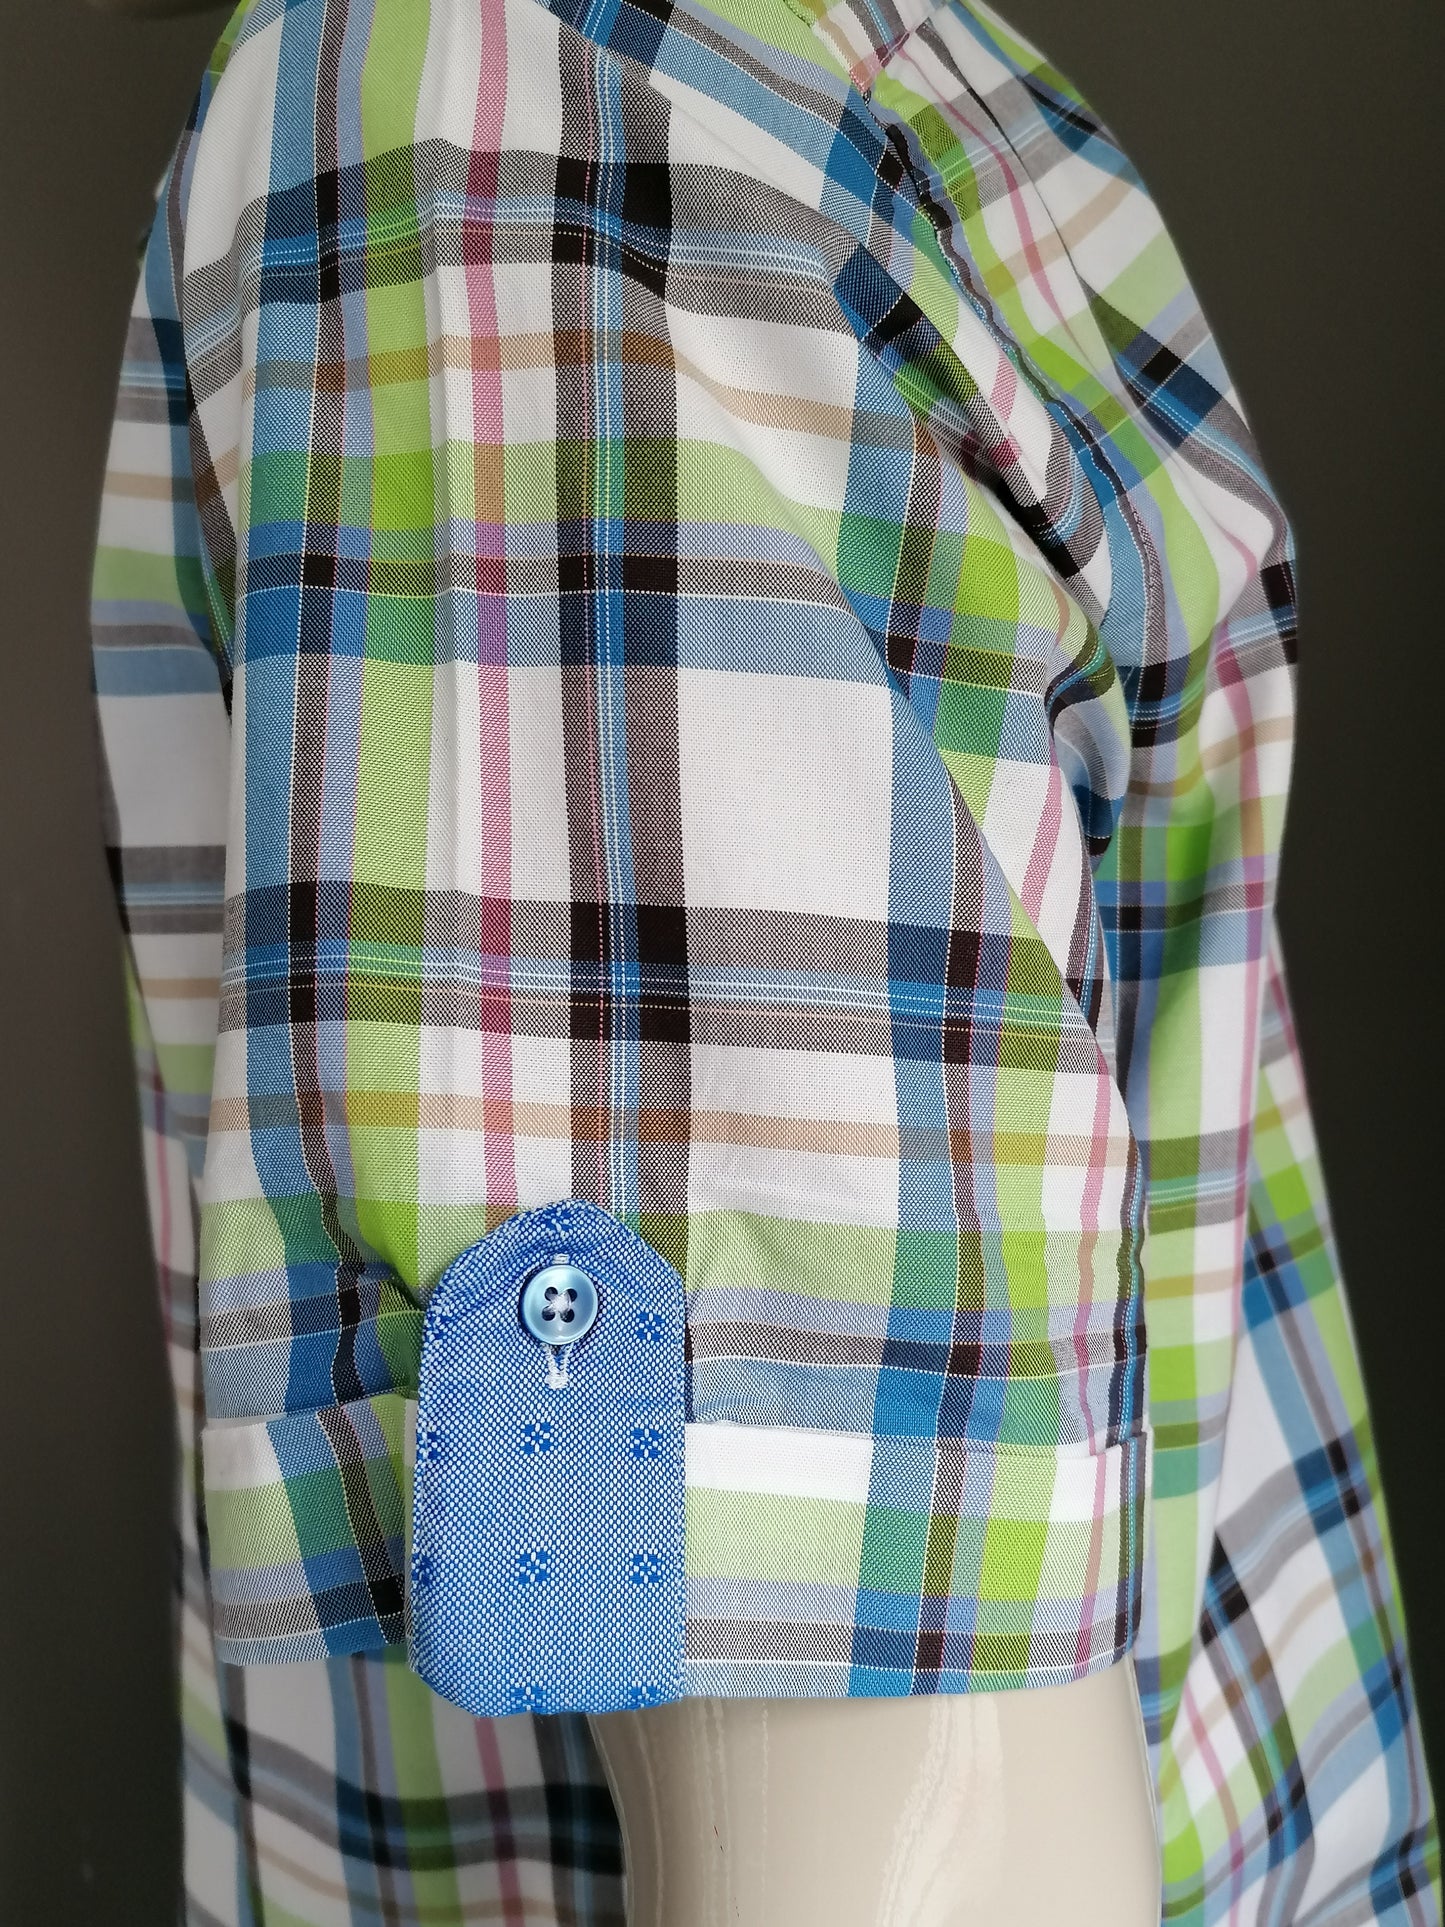 Blumfontain Shirt Short Sleeve. Rouge brun vert bleu vérifié. Taille xxl / 2xl.